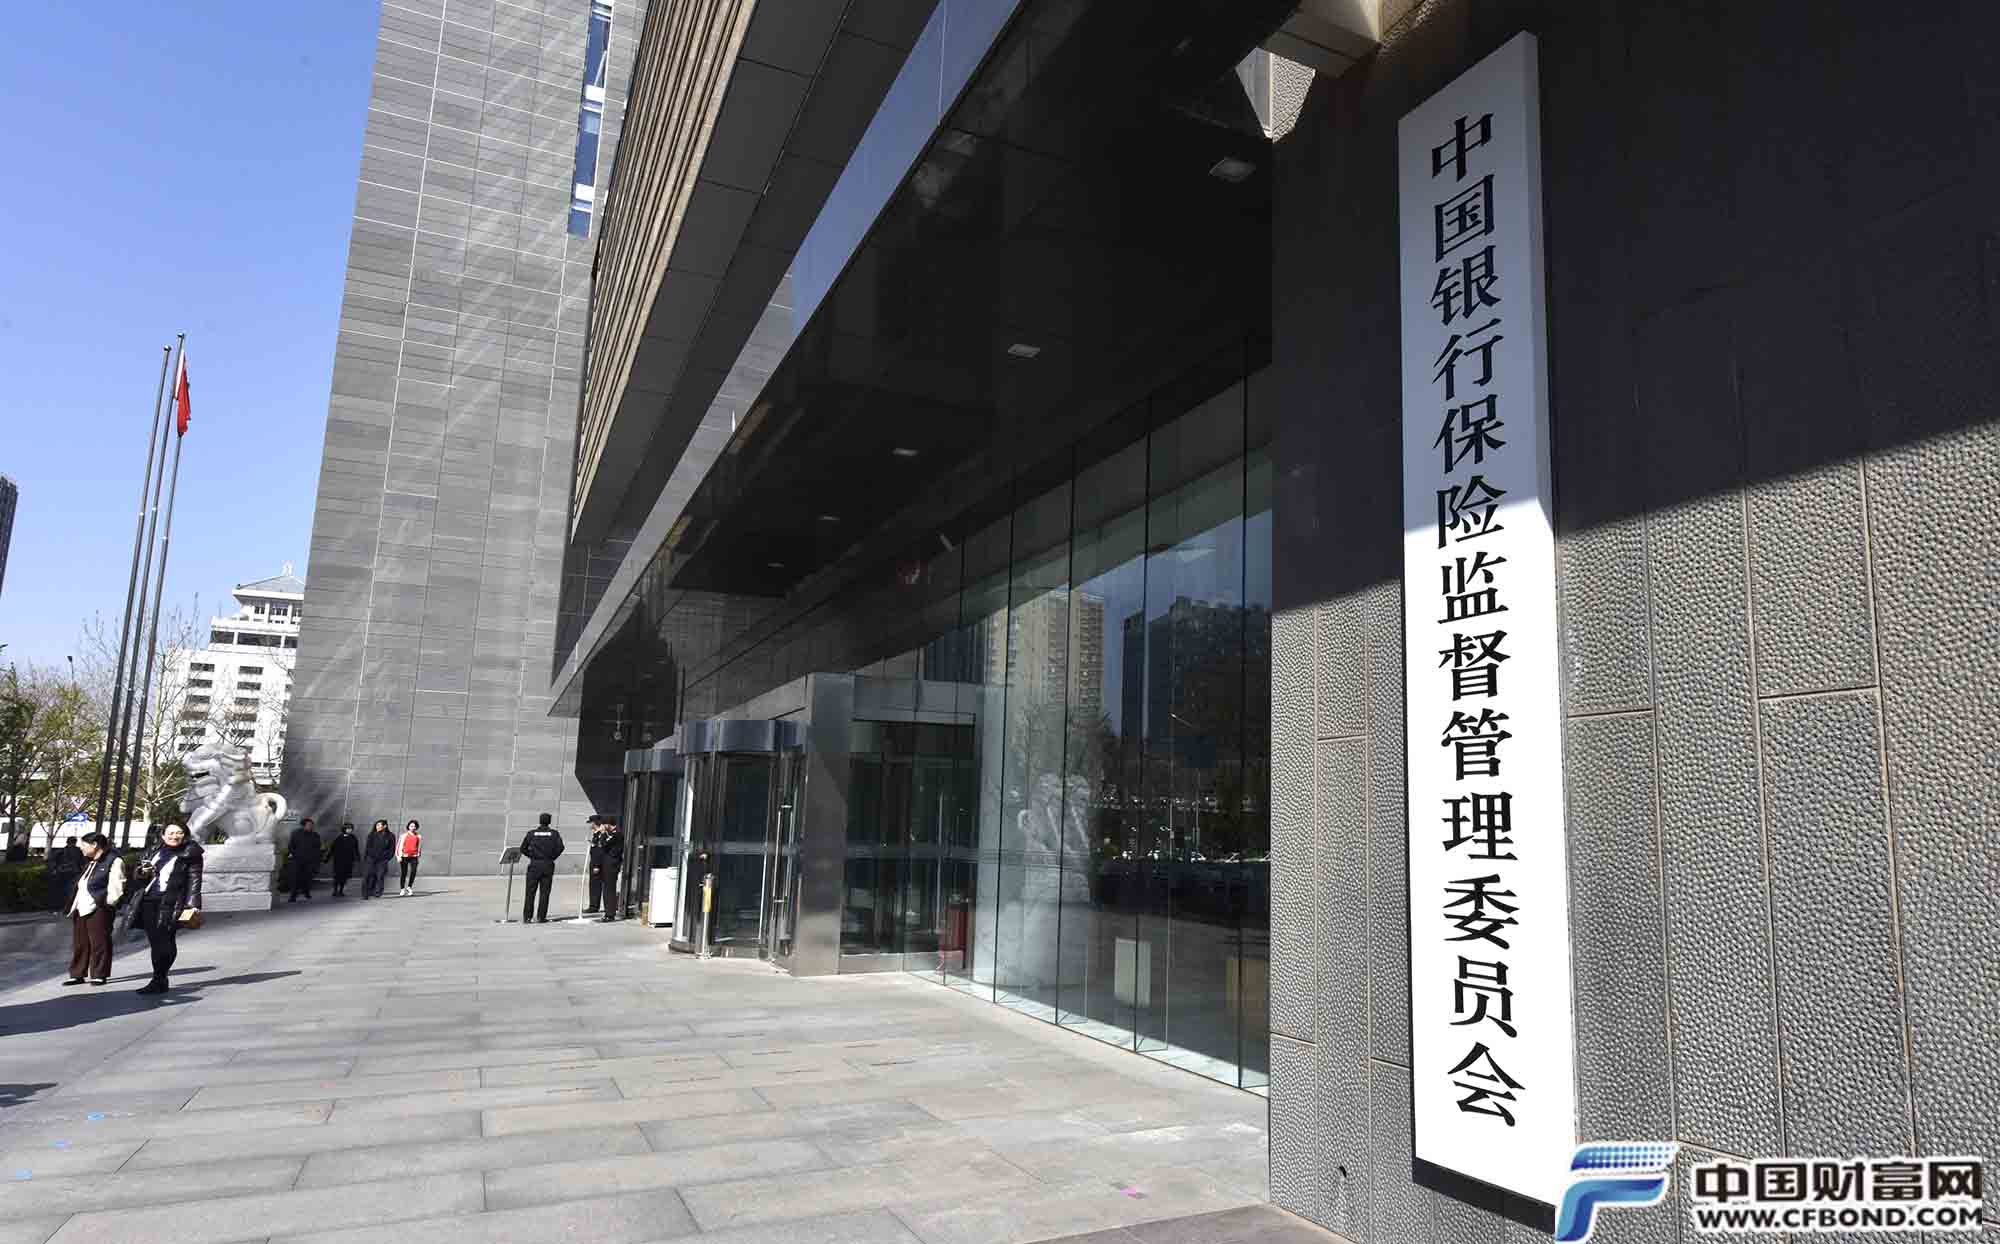 证监会发布《关于高质量建设北京证券交易所的意见》-新闻-上海证券报·中国证券网